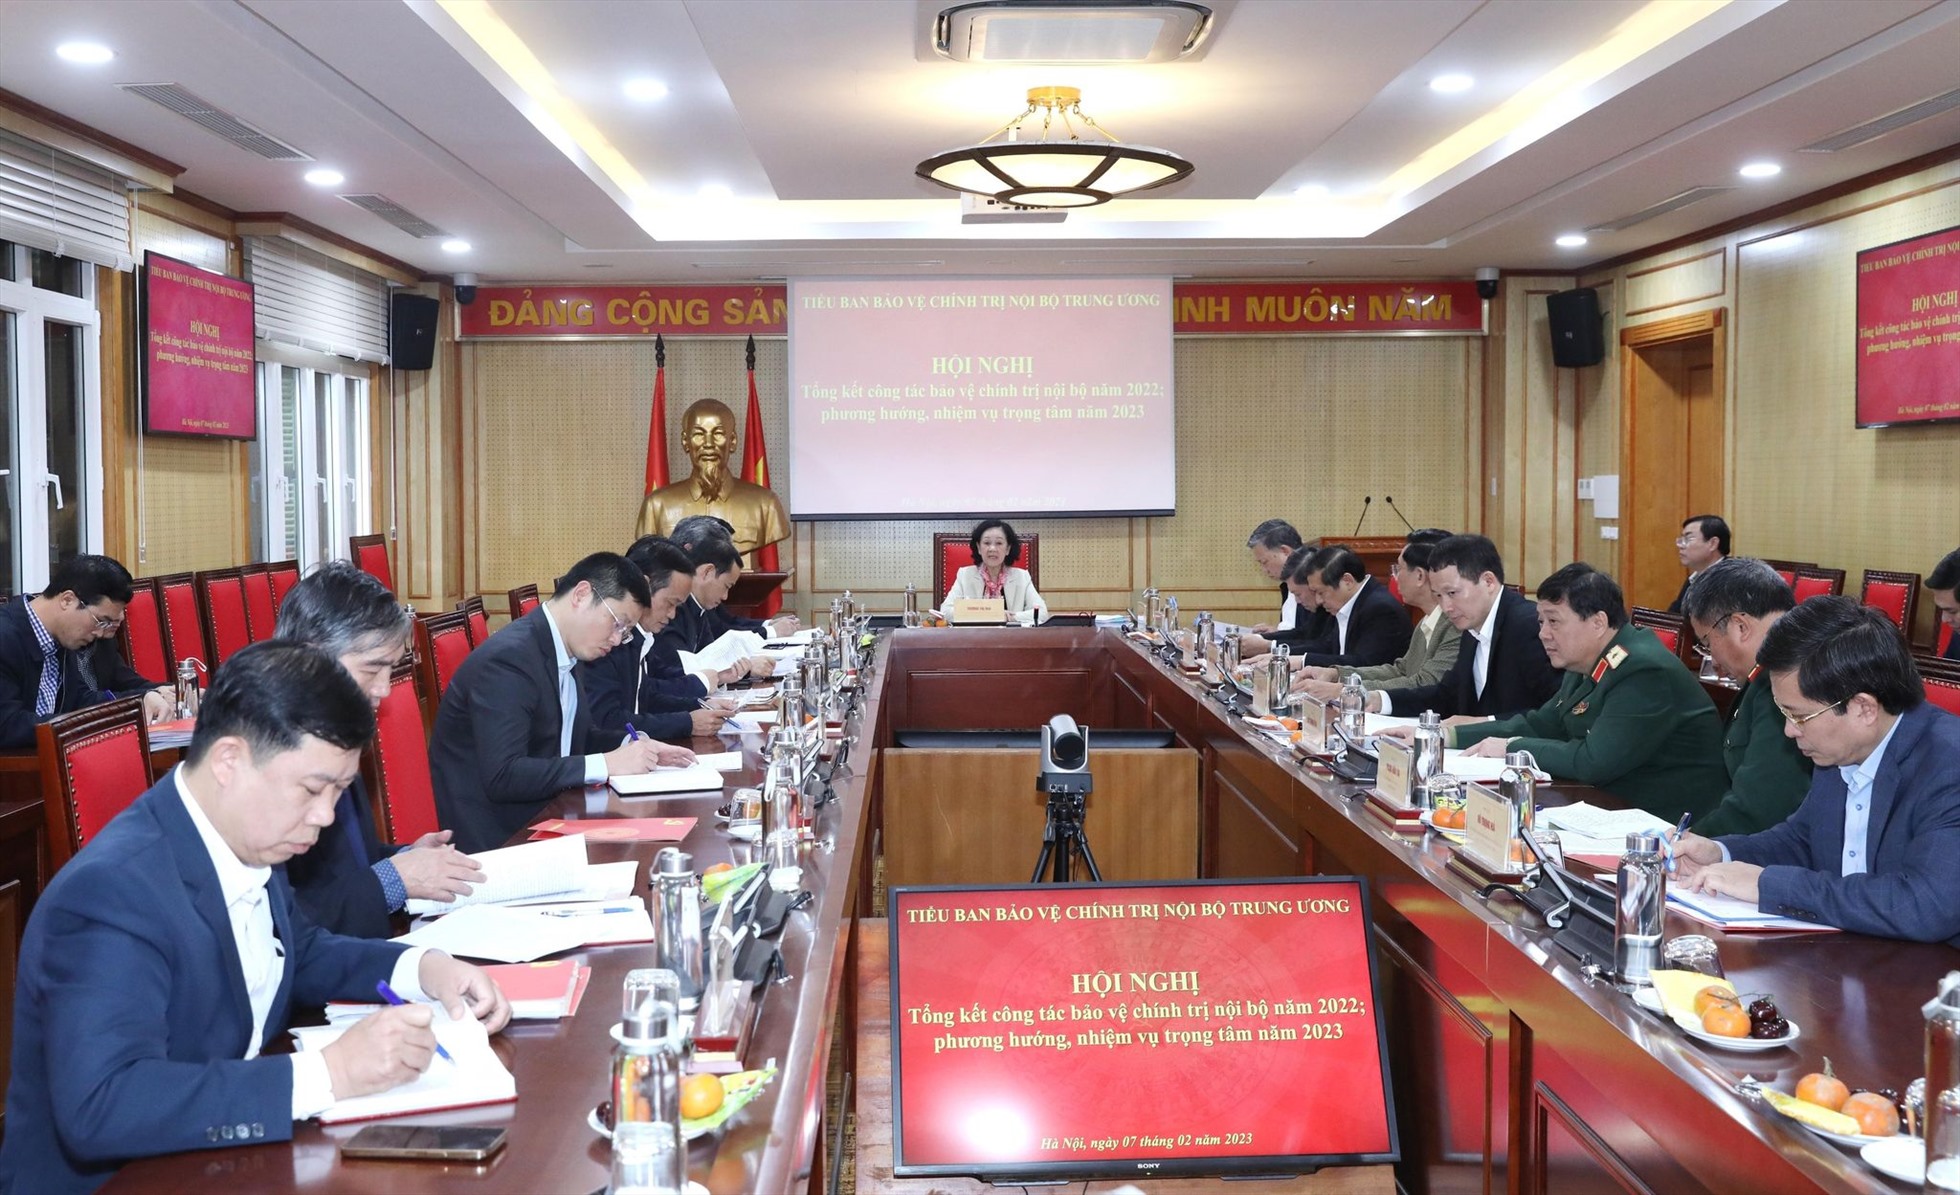 Tiểu ban Bảo vệ chính trị nội bộ Trung ương họp phiên thứ nhất năm 2023